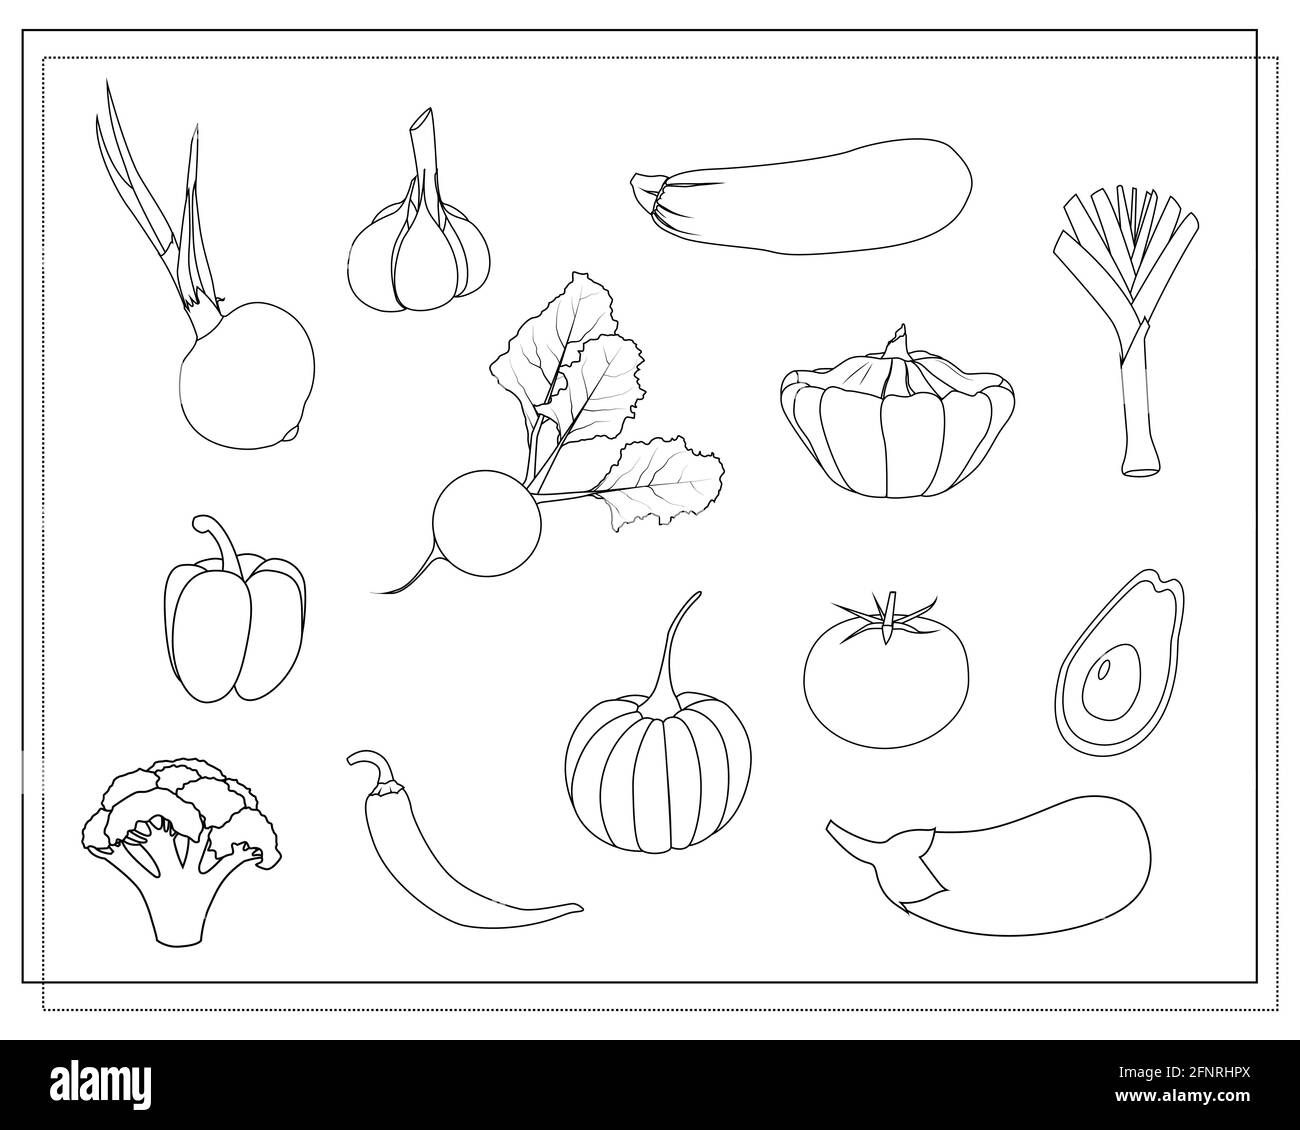 a set of contours, coloring vegetables. onion, garlic, beetroot, avocado, pumpkin, broccoli eggplant, leek, pepper, squash, squash chili pepper vector Stock Vector